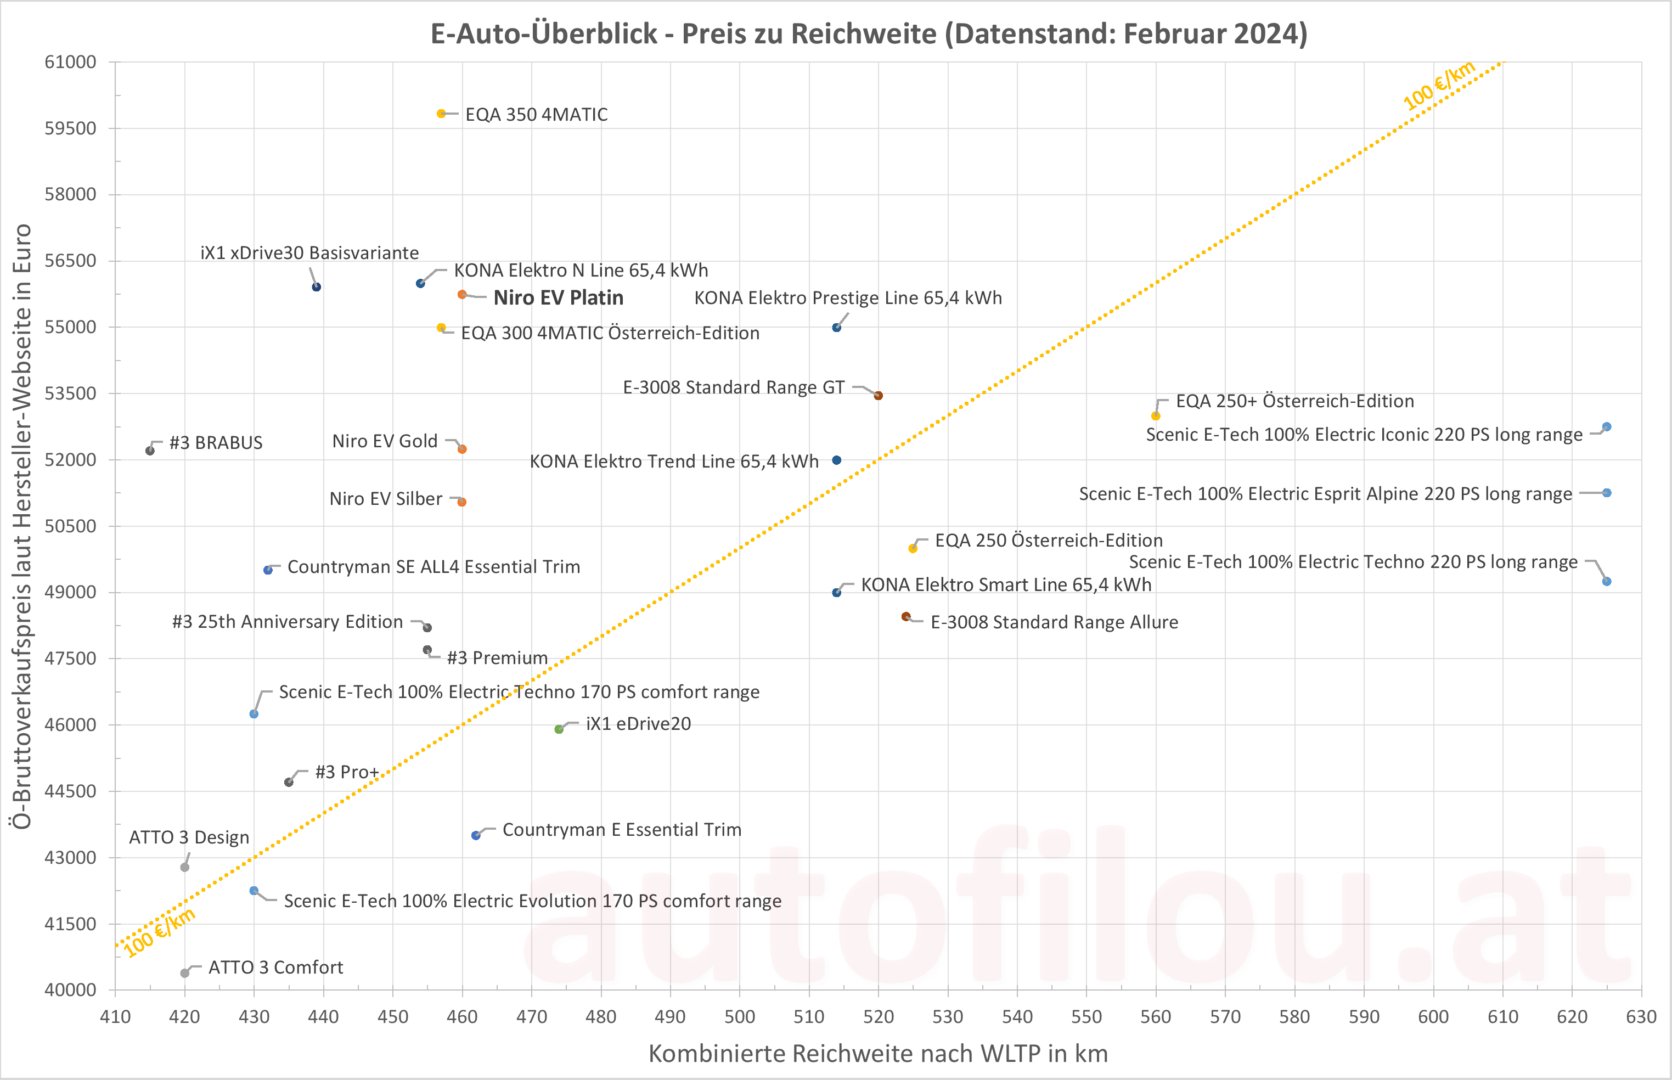 KIA Niro EV Preis zu Reichweite Grafik Vergleich Konkurrenz Pro und Kontra Cons